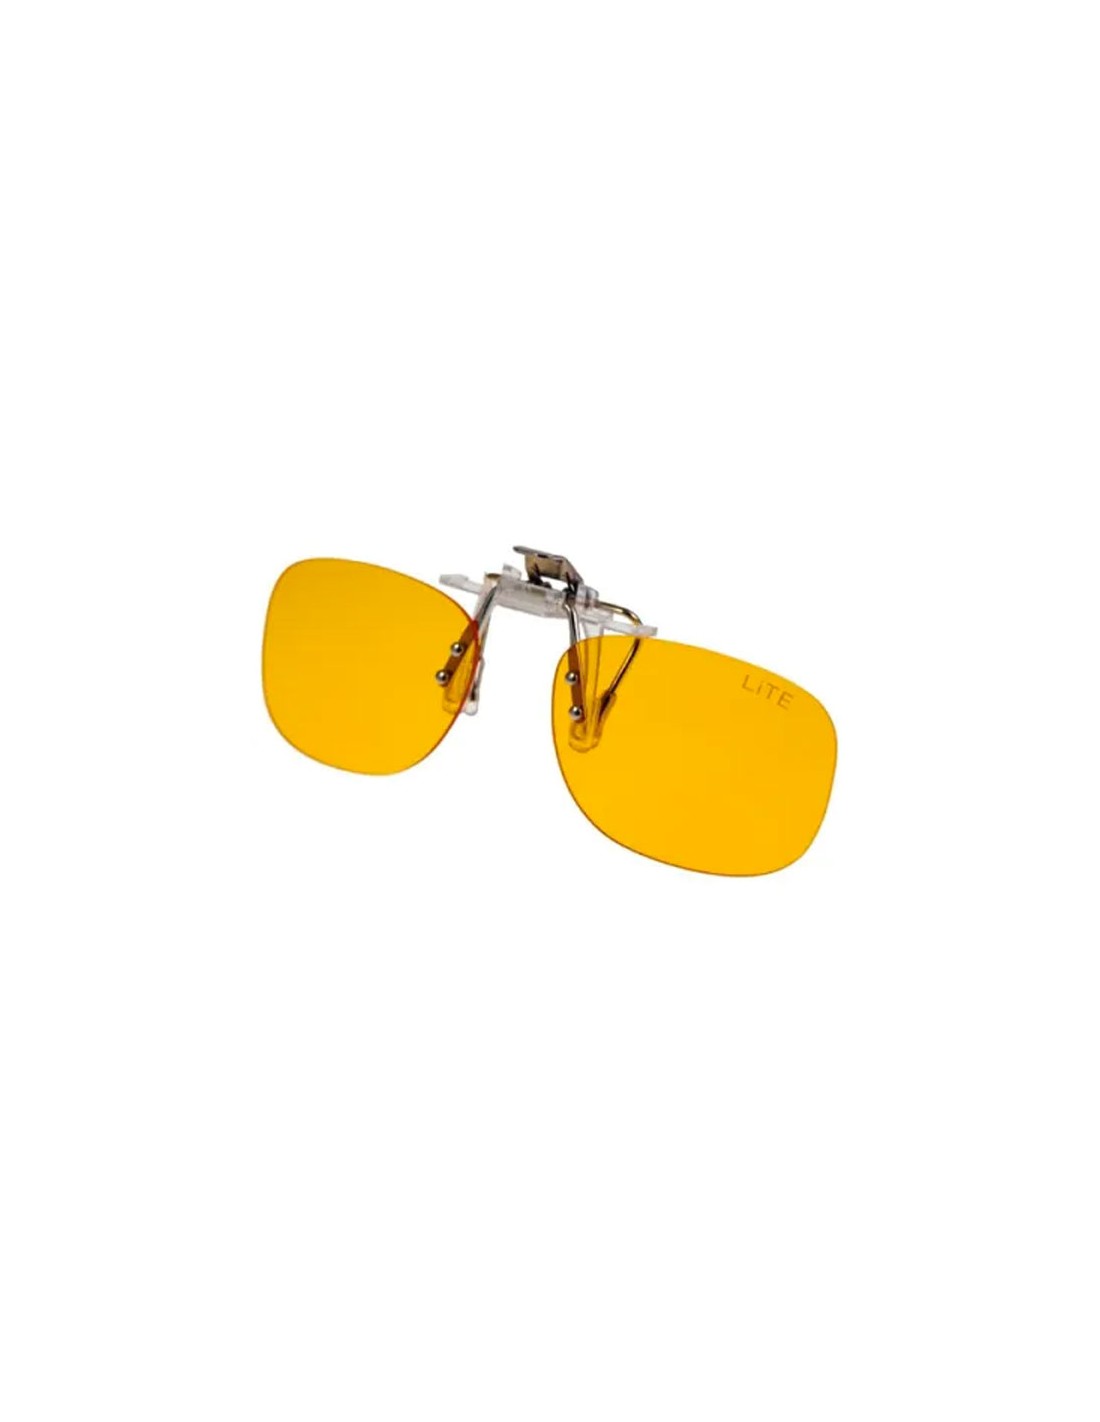 Réf. 98bb - Lunettes anti-lumière bleue - Clip solaire pour lunettes de vue  sur mesure et et accessoires - JHB